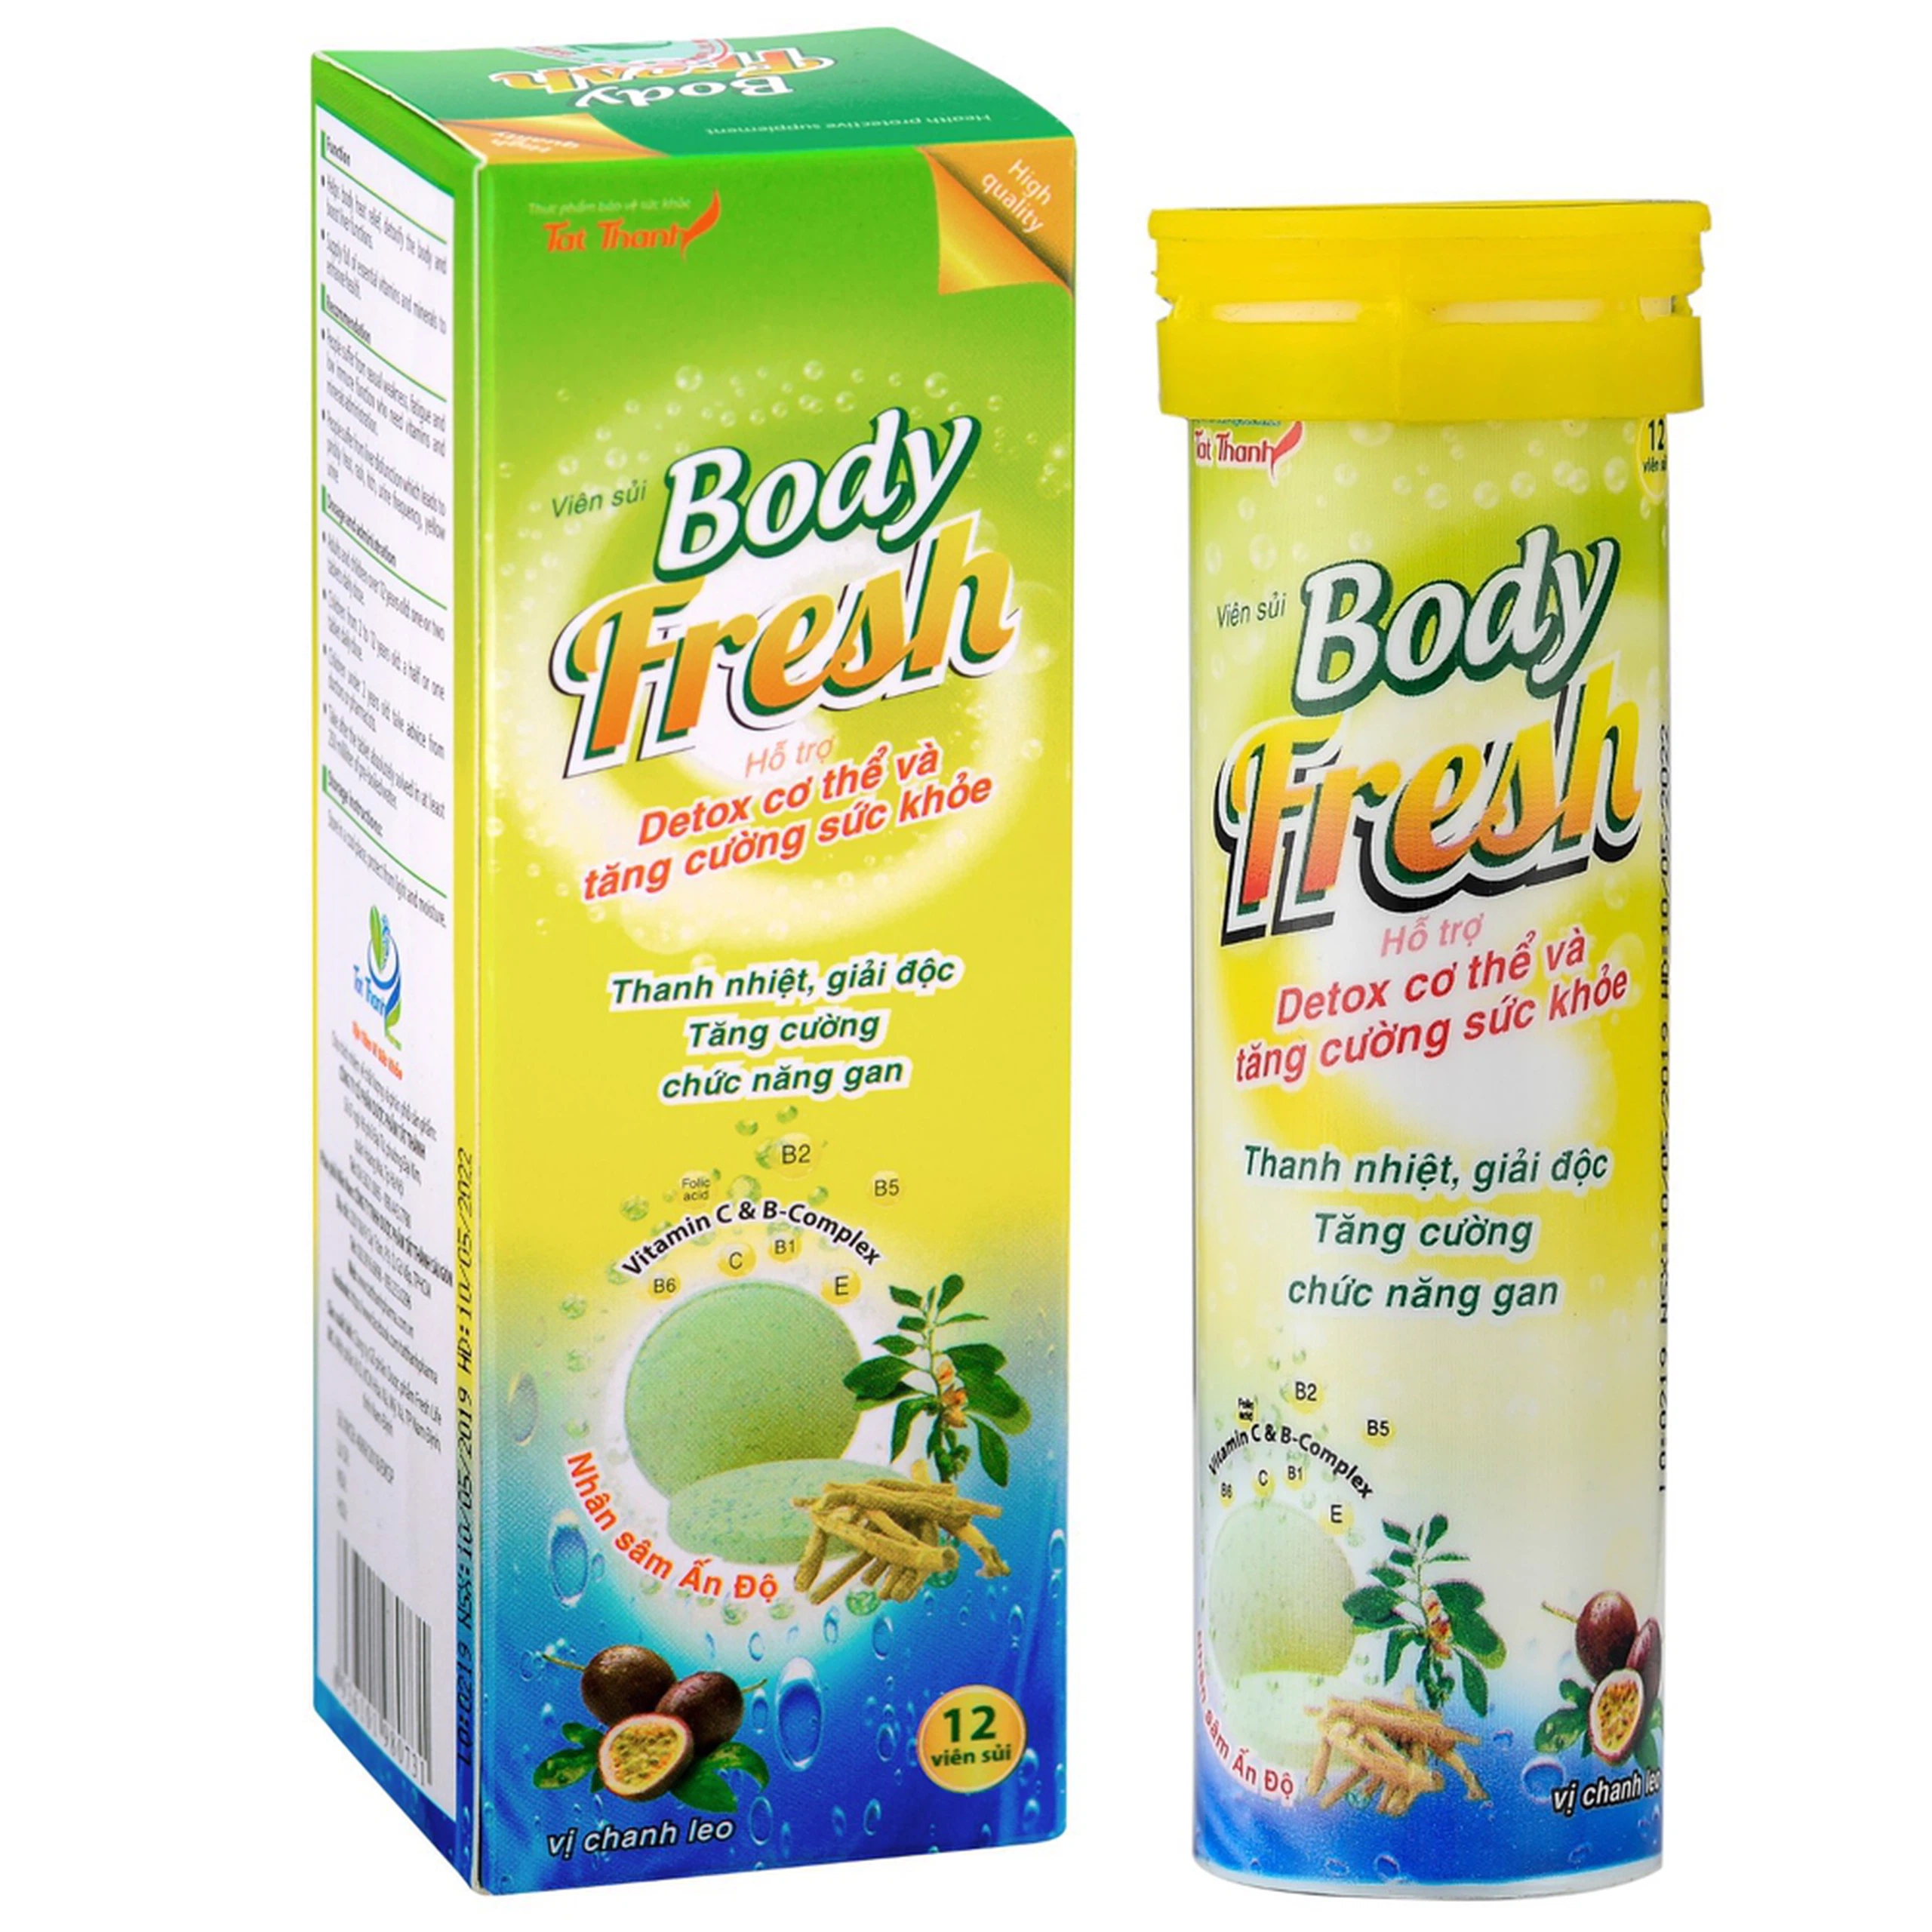 Viên sủi Body Fresh vị chanh leo hỗ trợ thanh nhiệt, giải độc, tăng cường chức năng gan (12 viên)